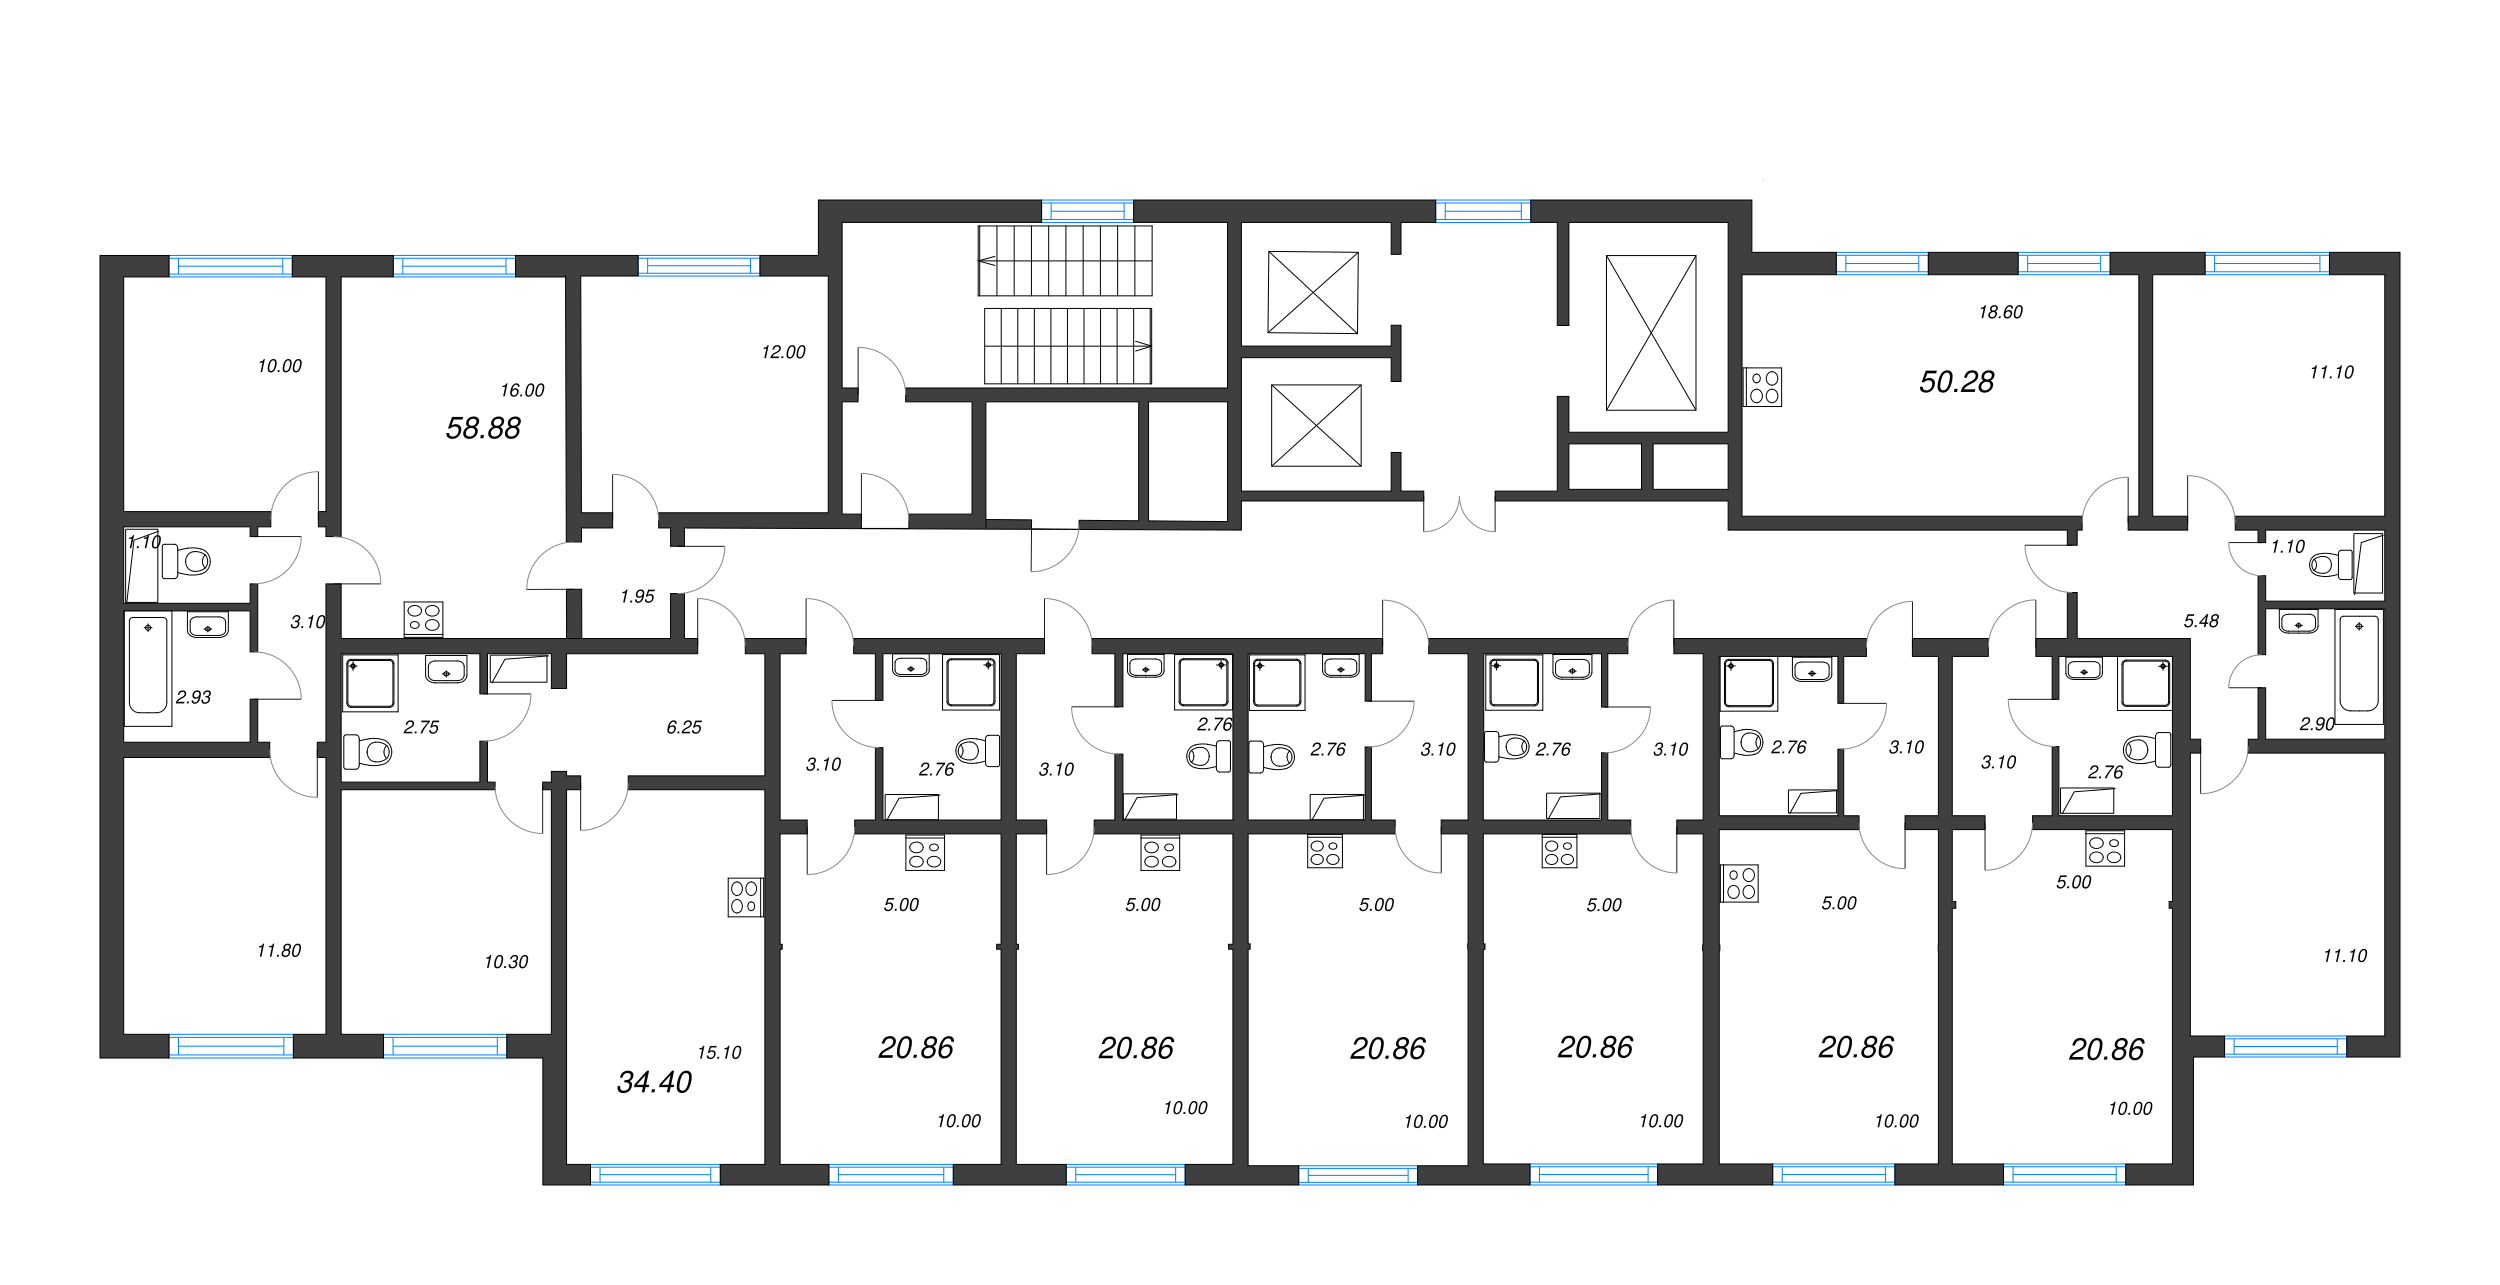 4-комнатная (Евро) квартира, 58.88 м² в ЖК "Ручьи" - планировка этажа